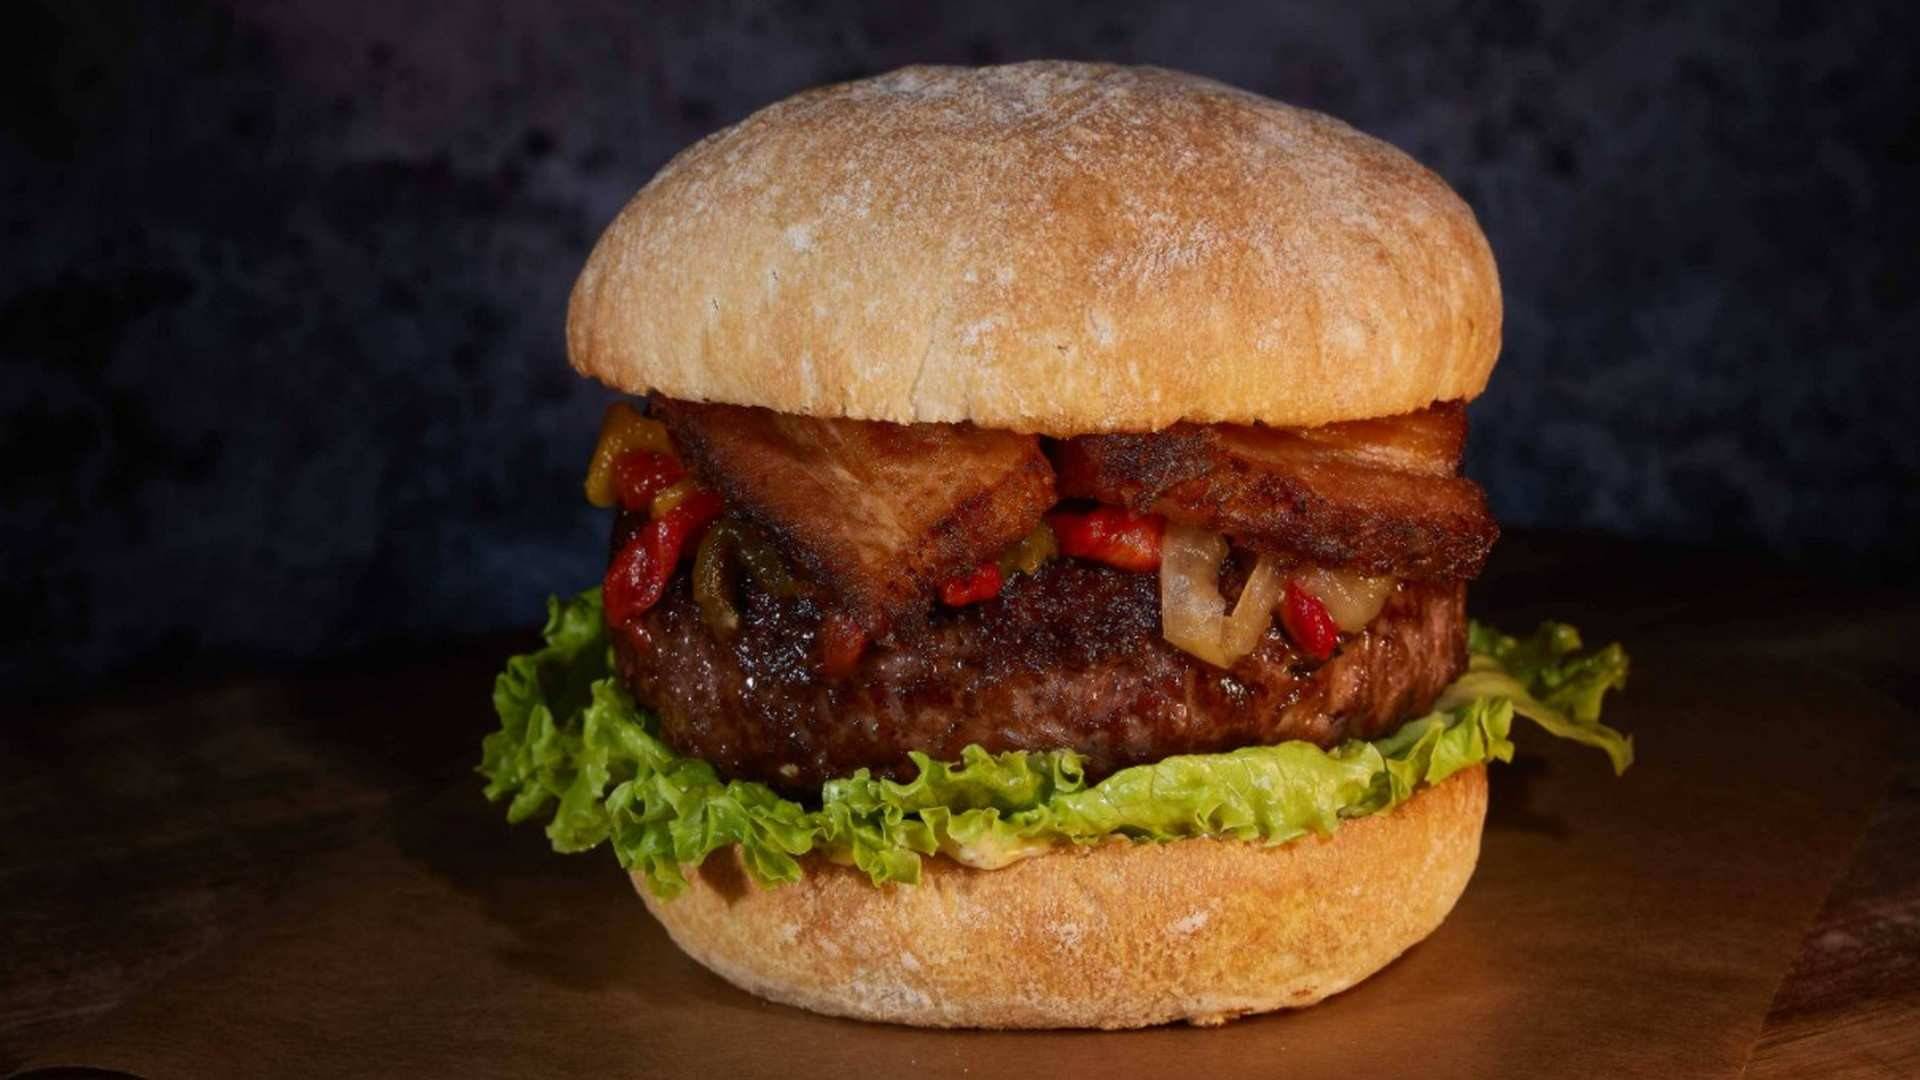 Cuatromanos Burger es el delivery especializado en hamburguesas de los chefs Paco Roncero y Ramón Freixa